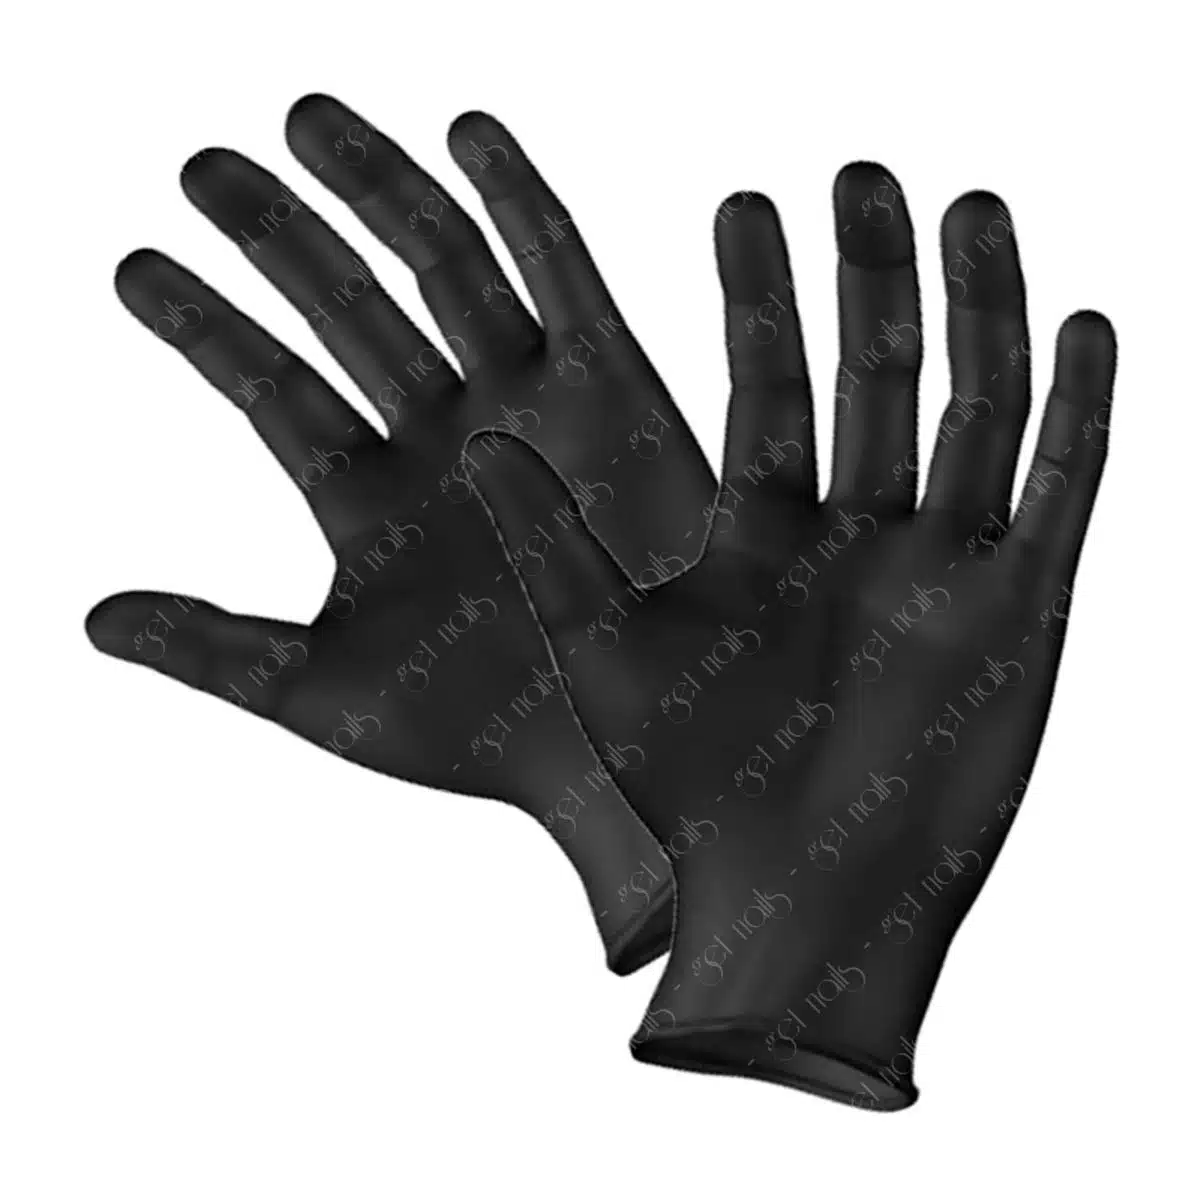 Get Nails Austria - Hygiene gloves size L, 100 pcs.